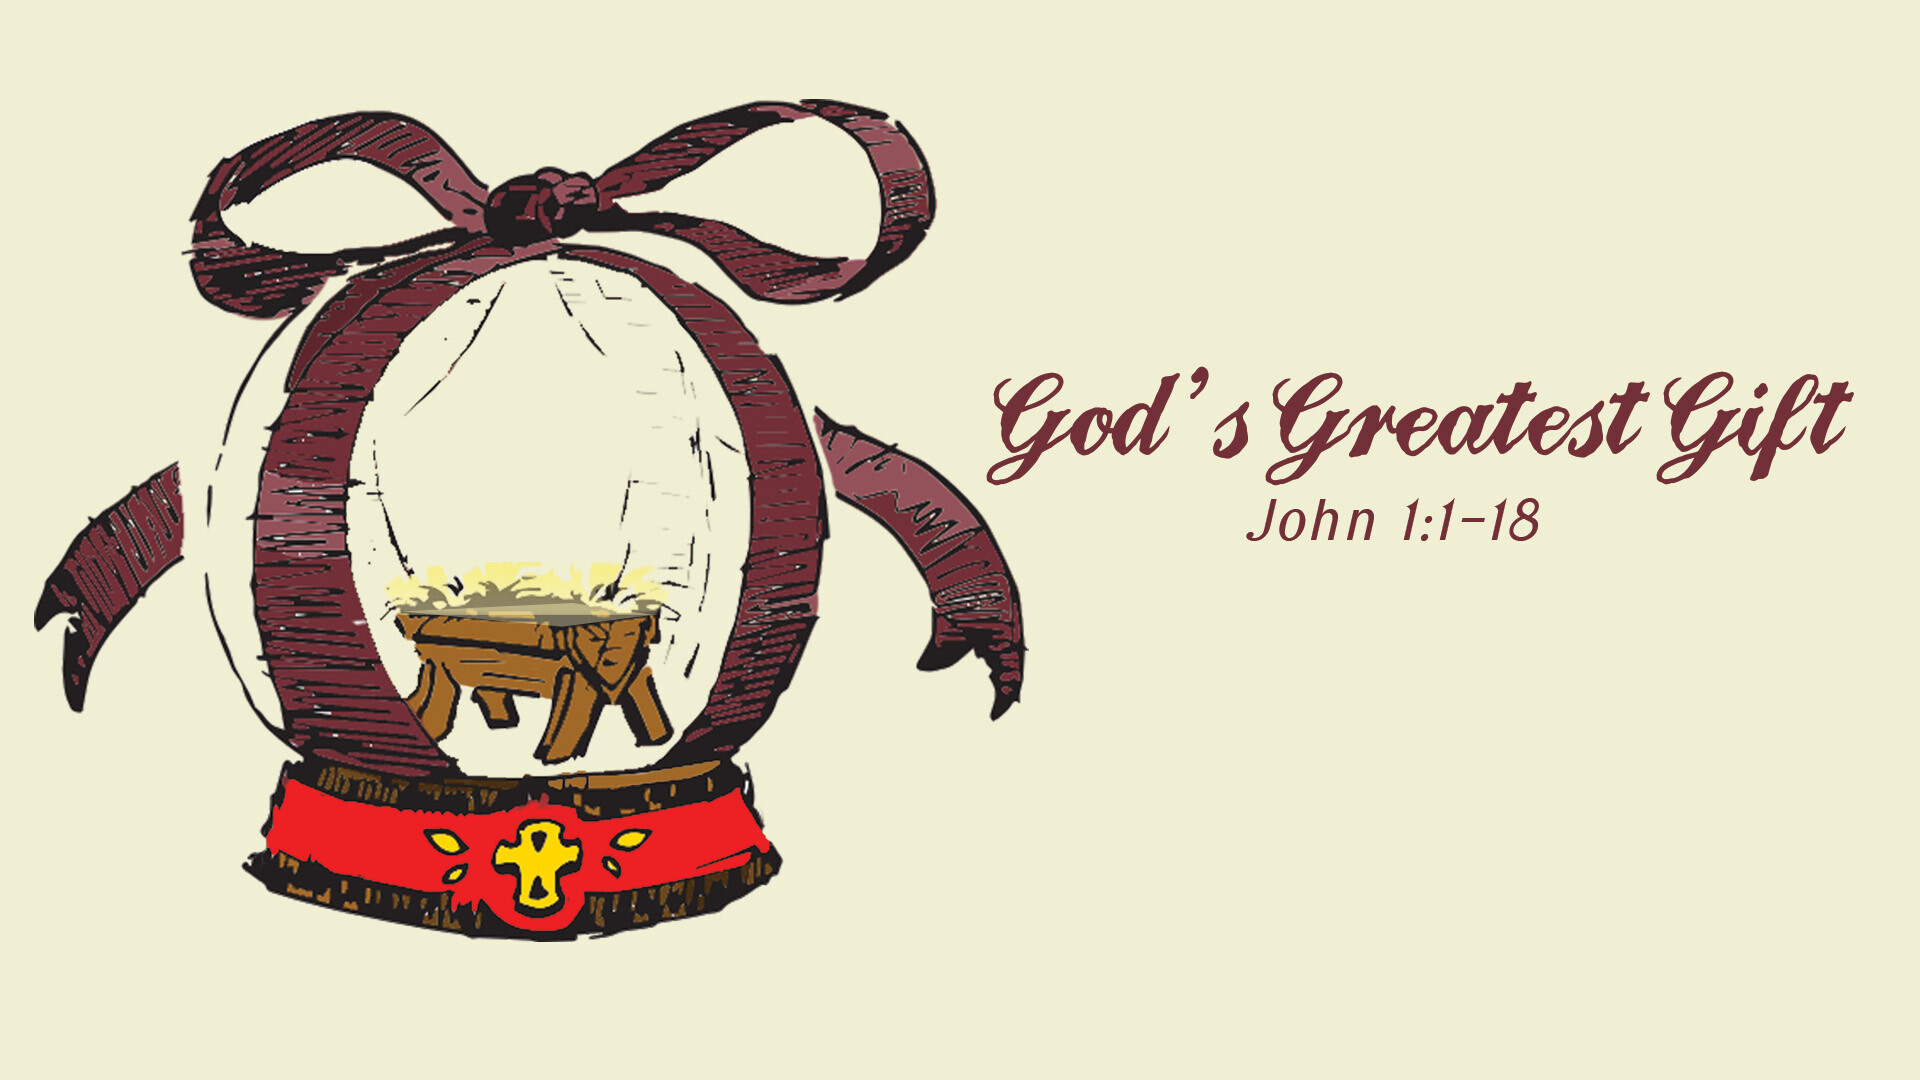 John 1:1-18 : God's Greatest Gift